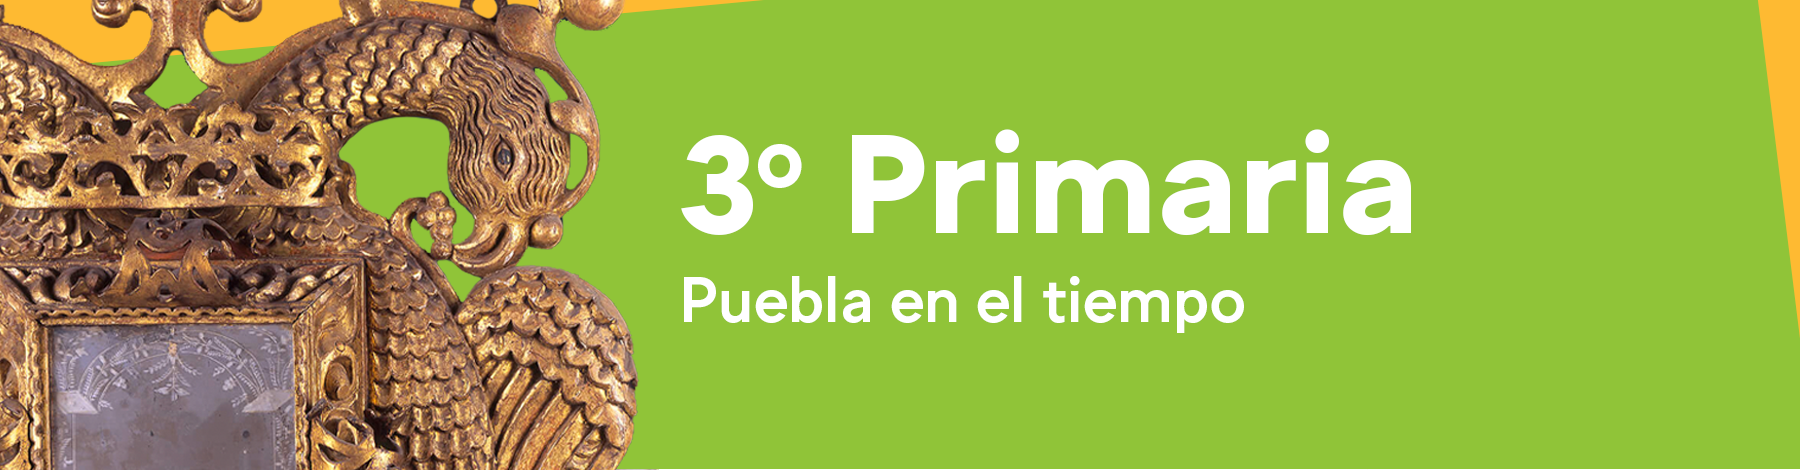 Primaria | Museo Amparo, Puebla | Museo Amparo, Puebla.